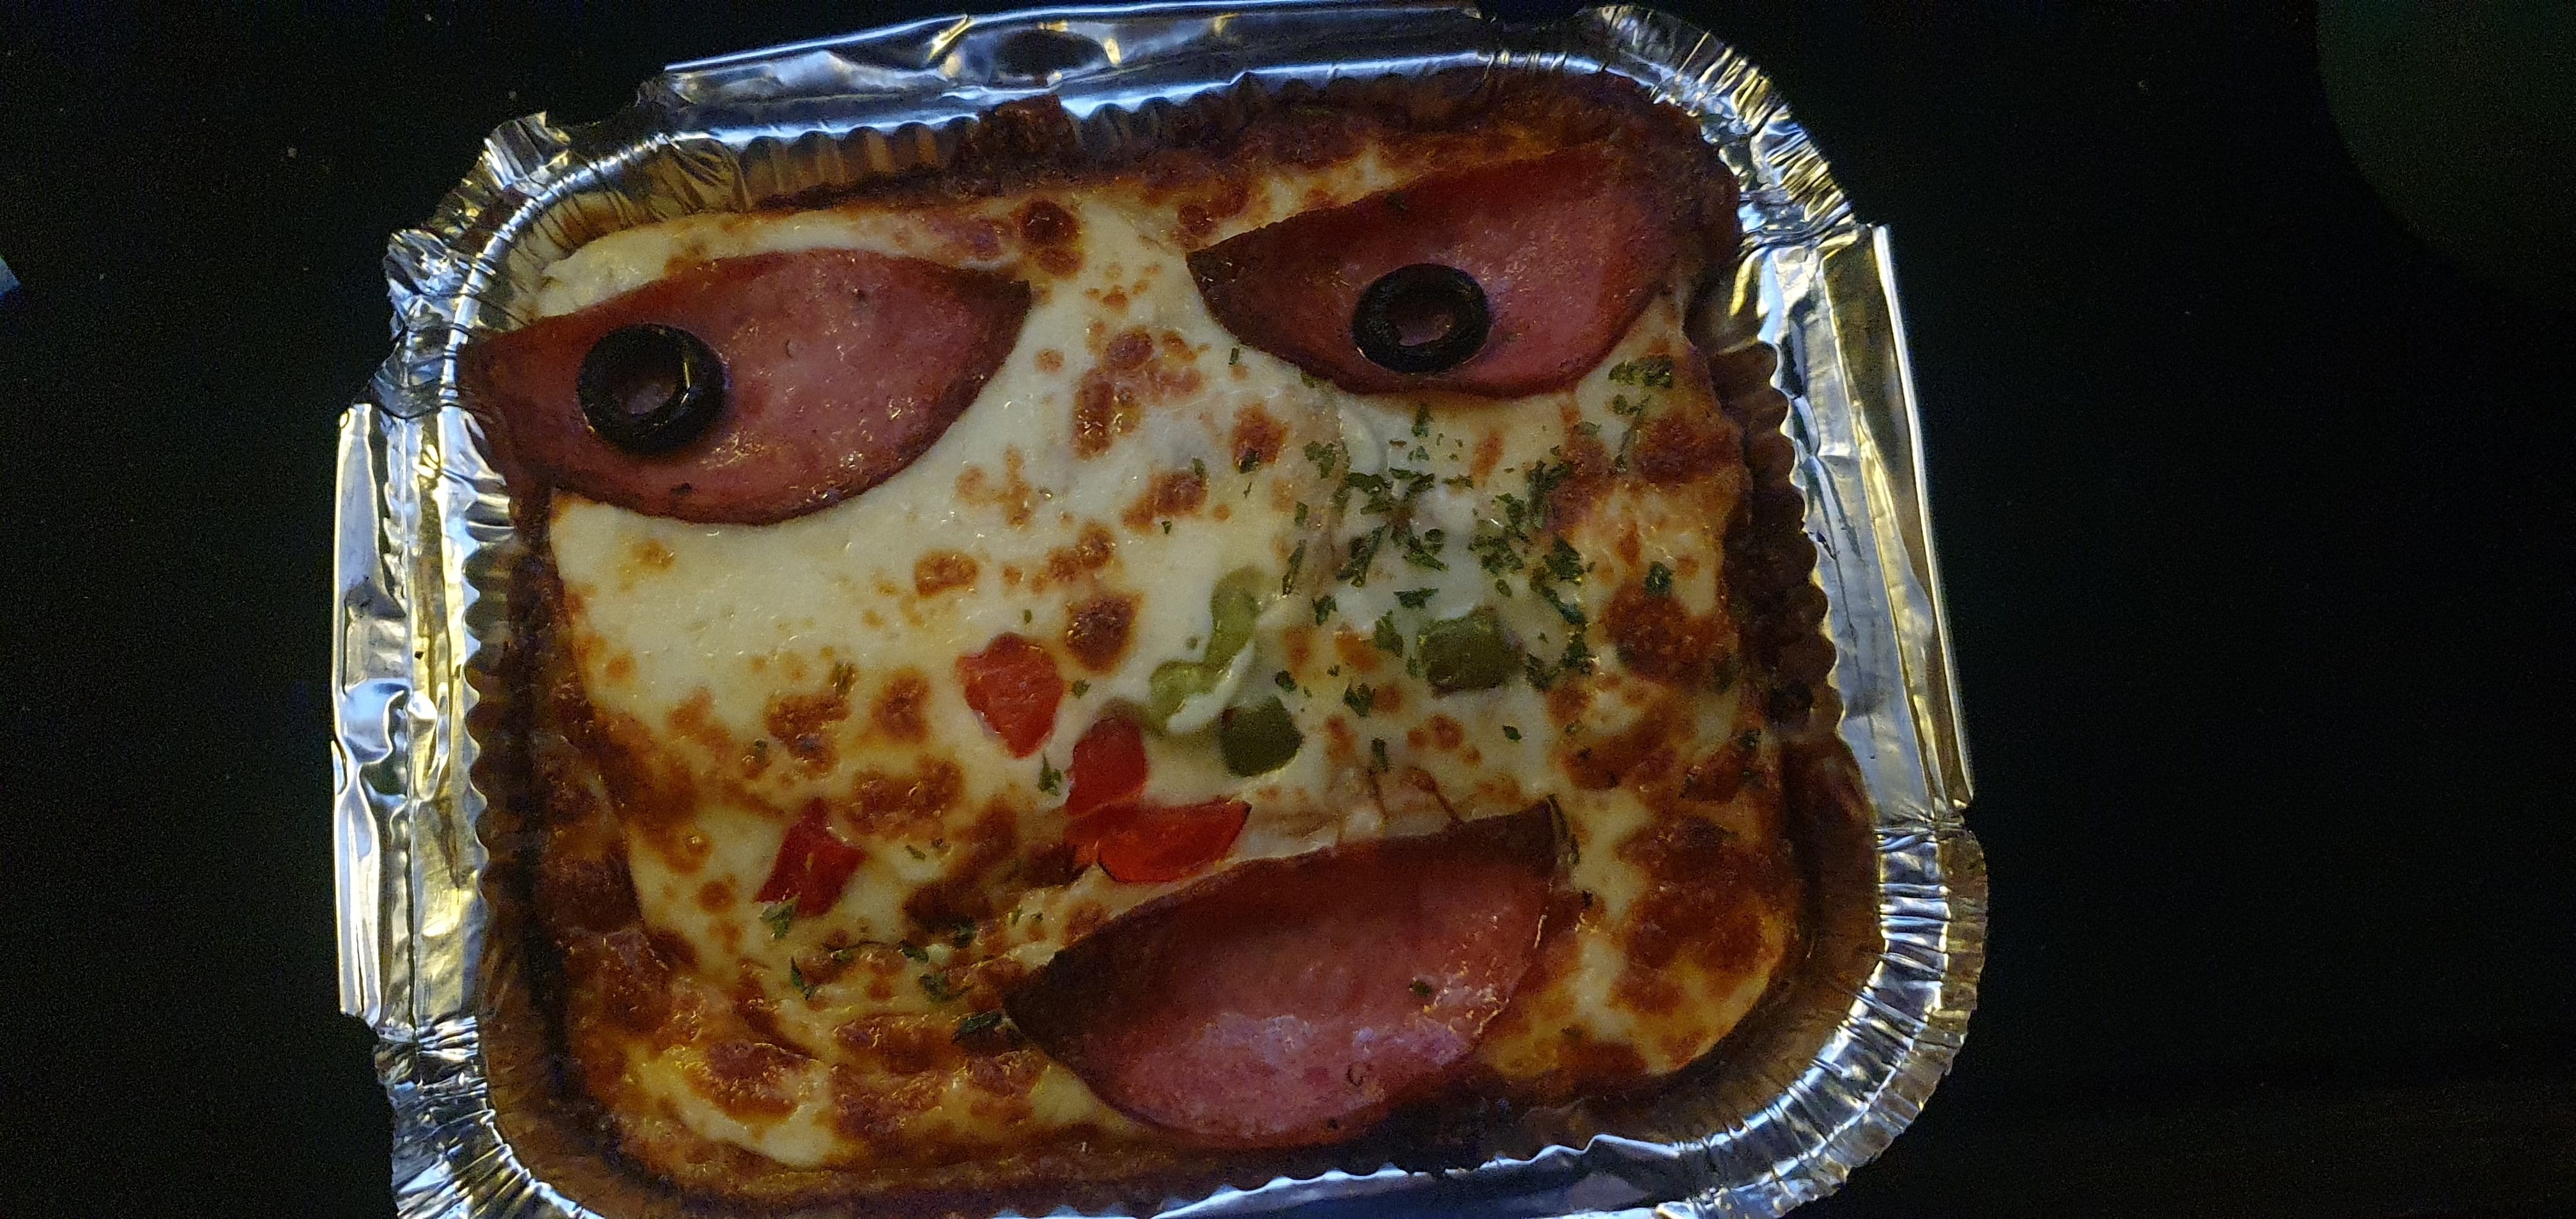 피자랑 같이 온스파게티가 ㅈㄴ무섭게생김